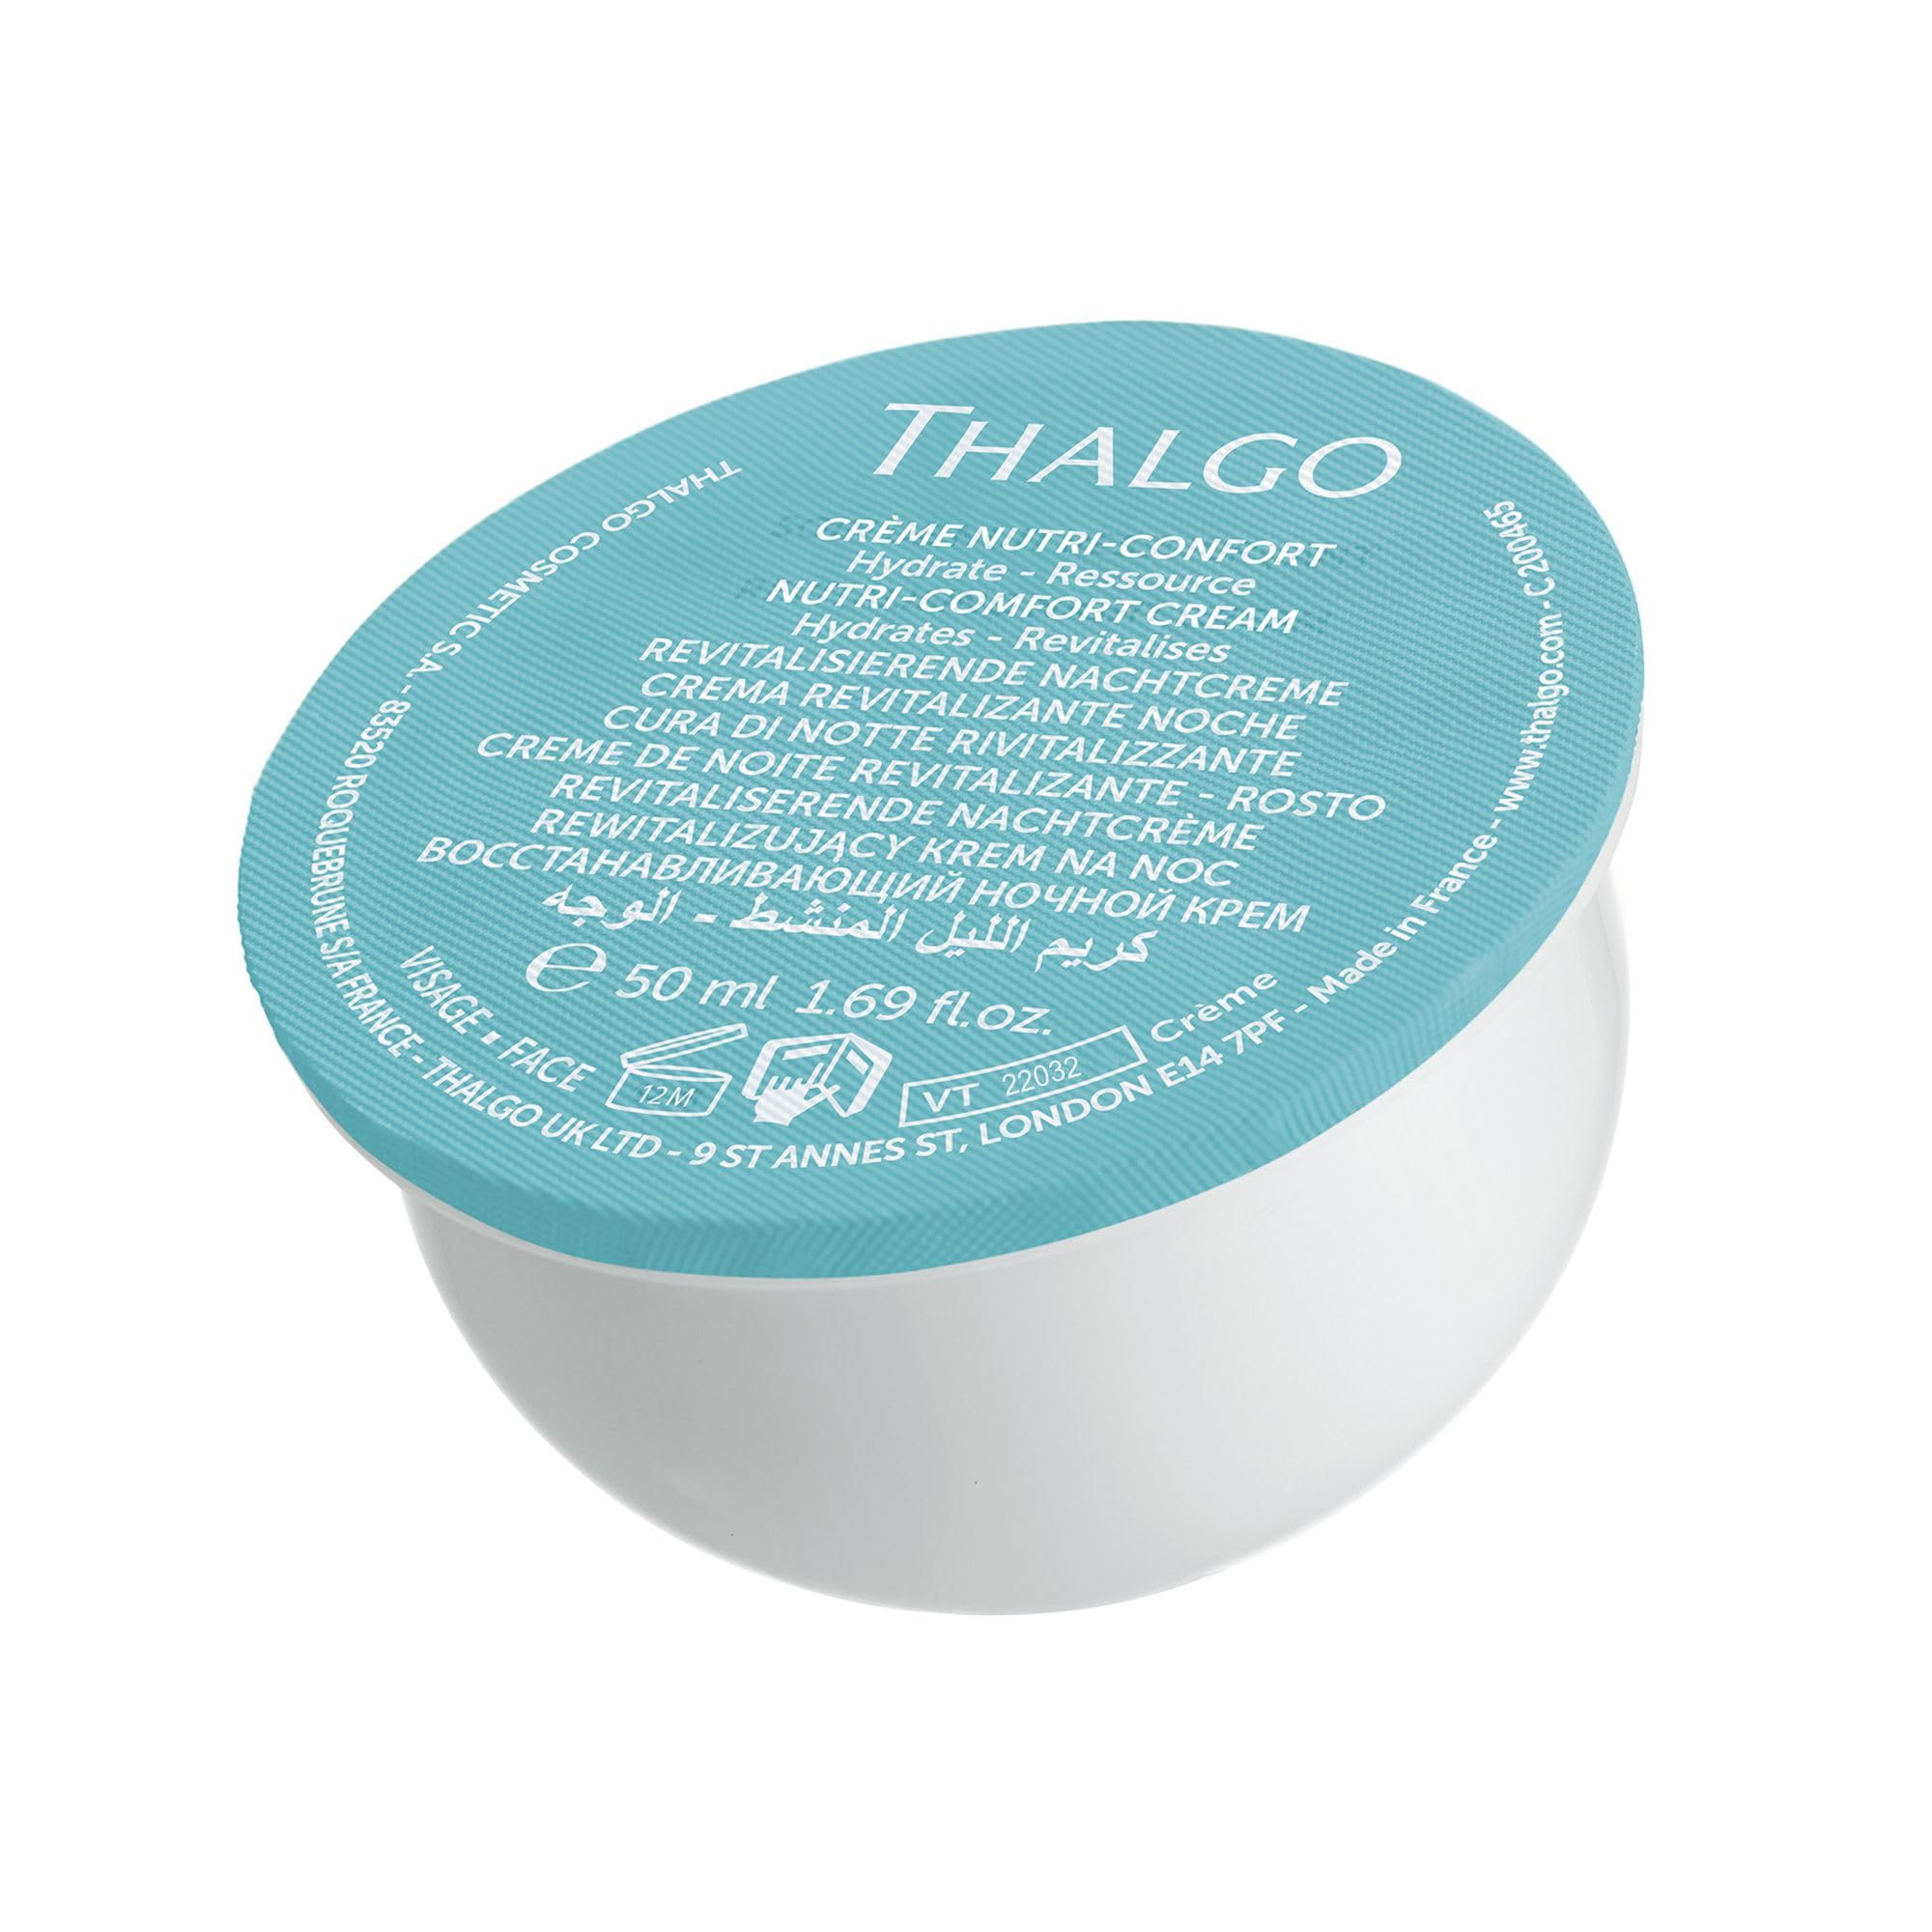 THALGO Sanfte Nutri-Comfort-Creme Cold Cream Marine 2.0, 50ml (Nachfüllkapsel)